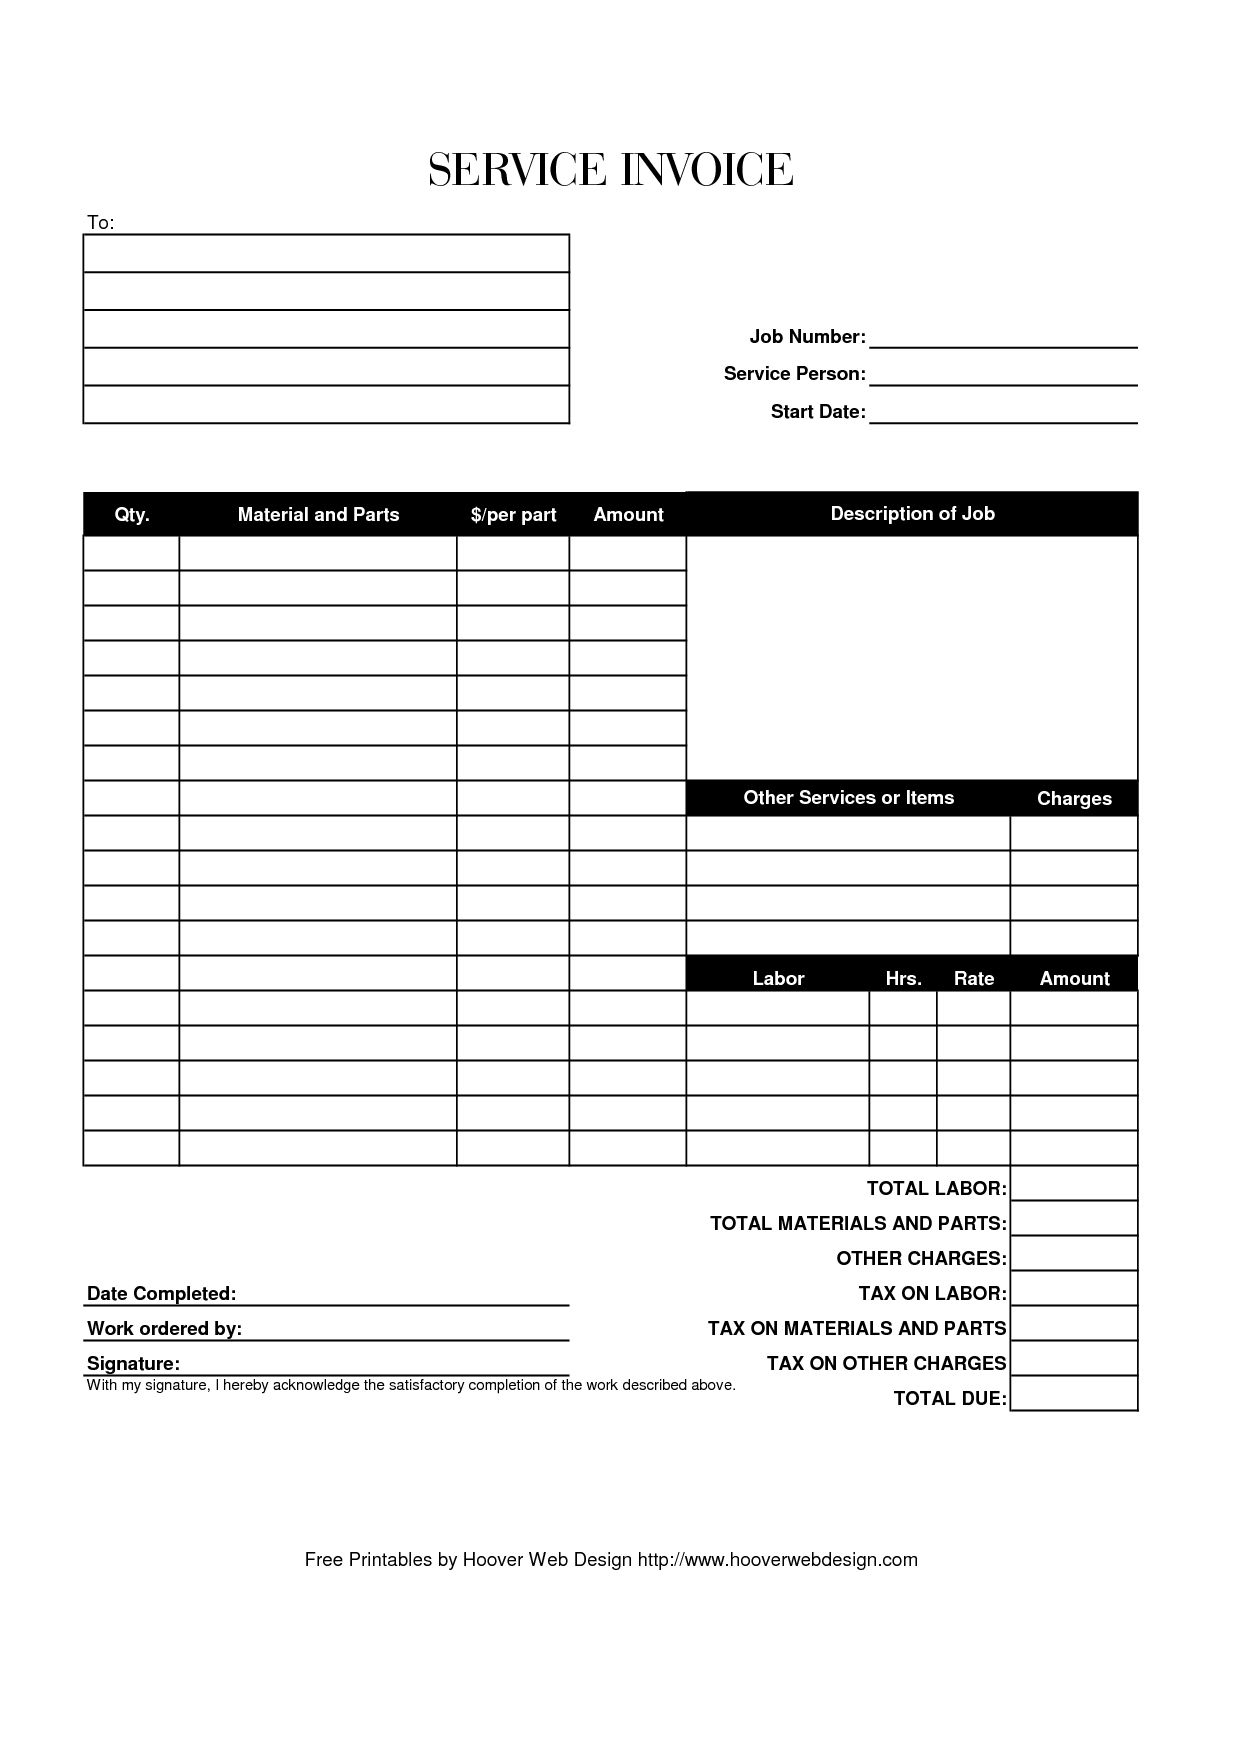 Blank Service Invoice Blank Invoice Blank Service Invoice Template - Free Printable Blank Invoice Sheet